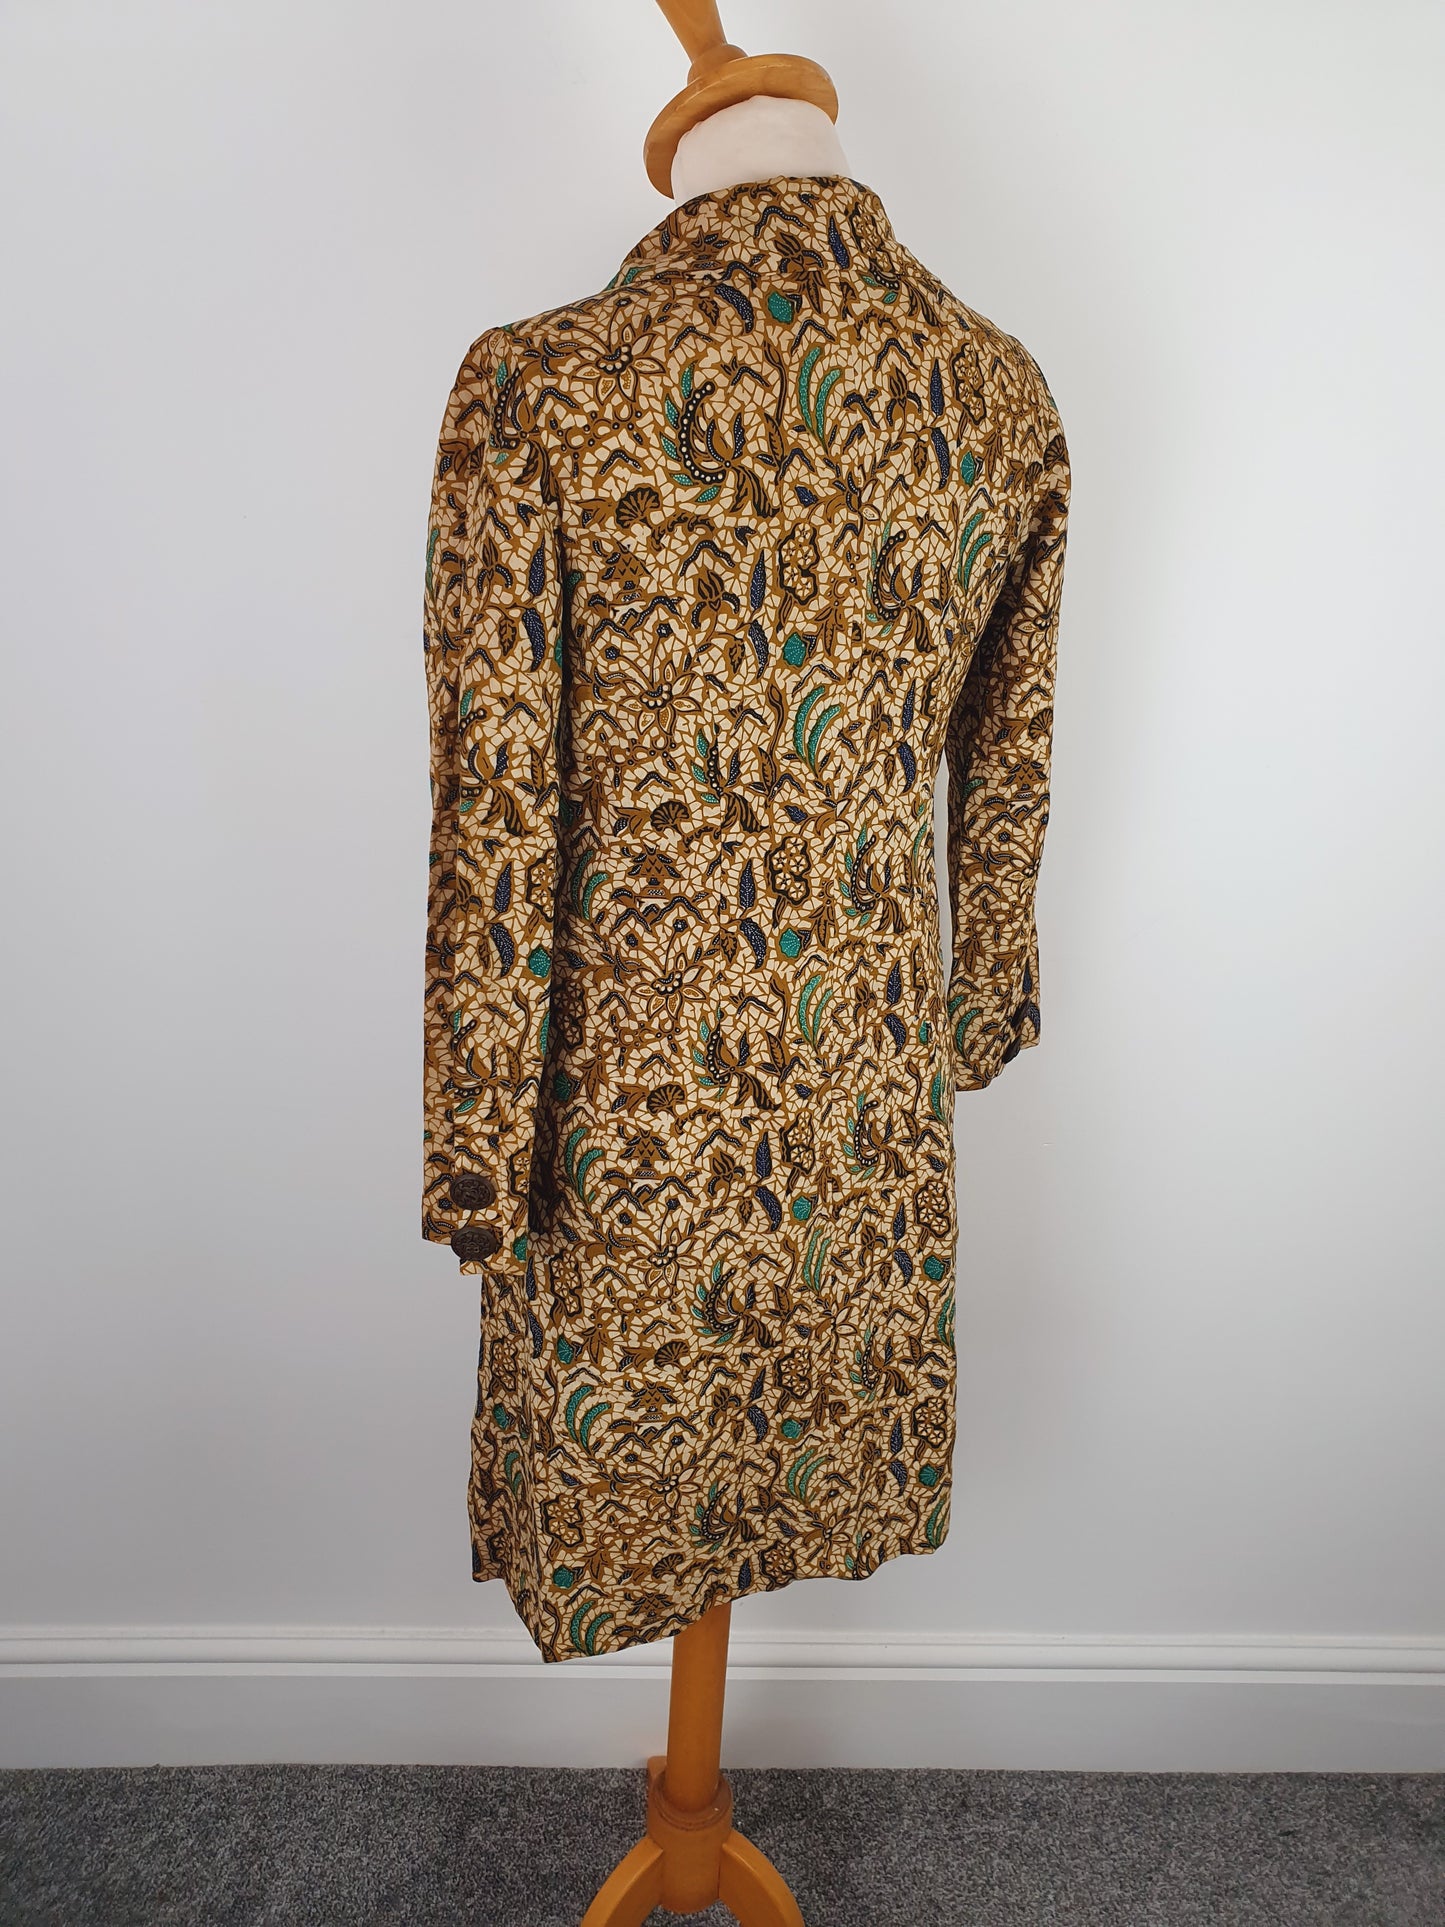 1960s Handmade Coat